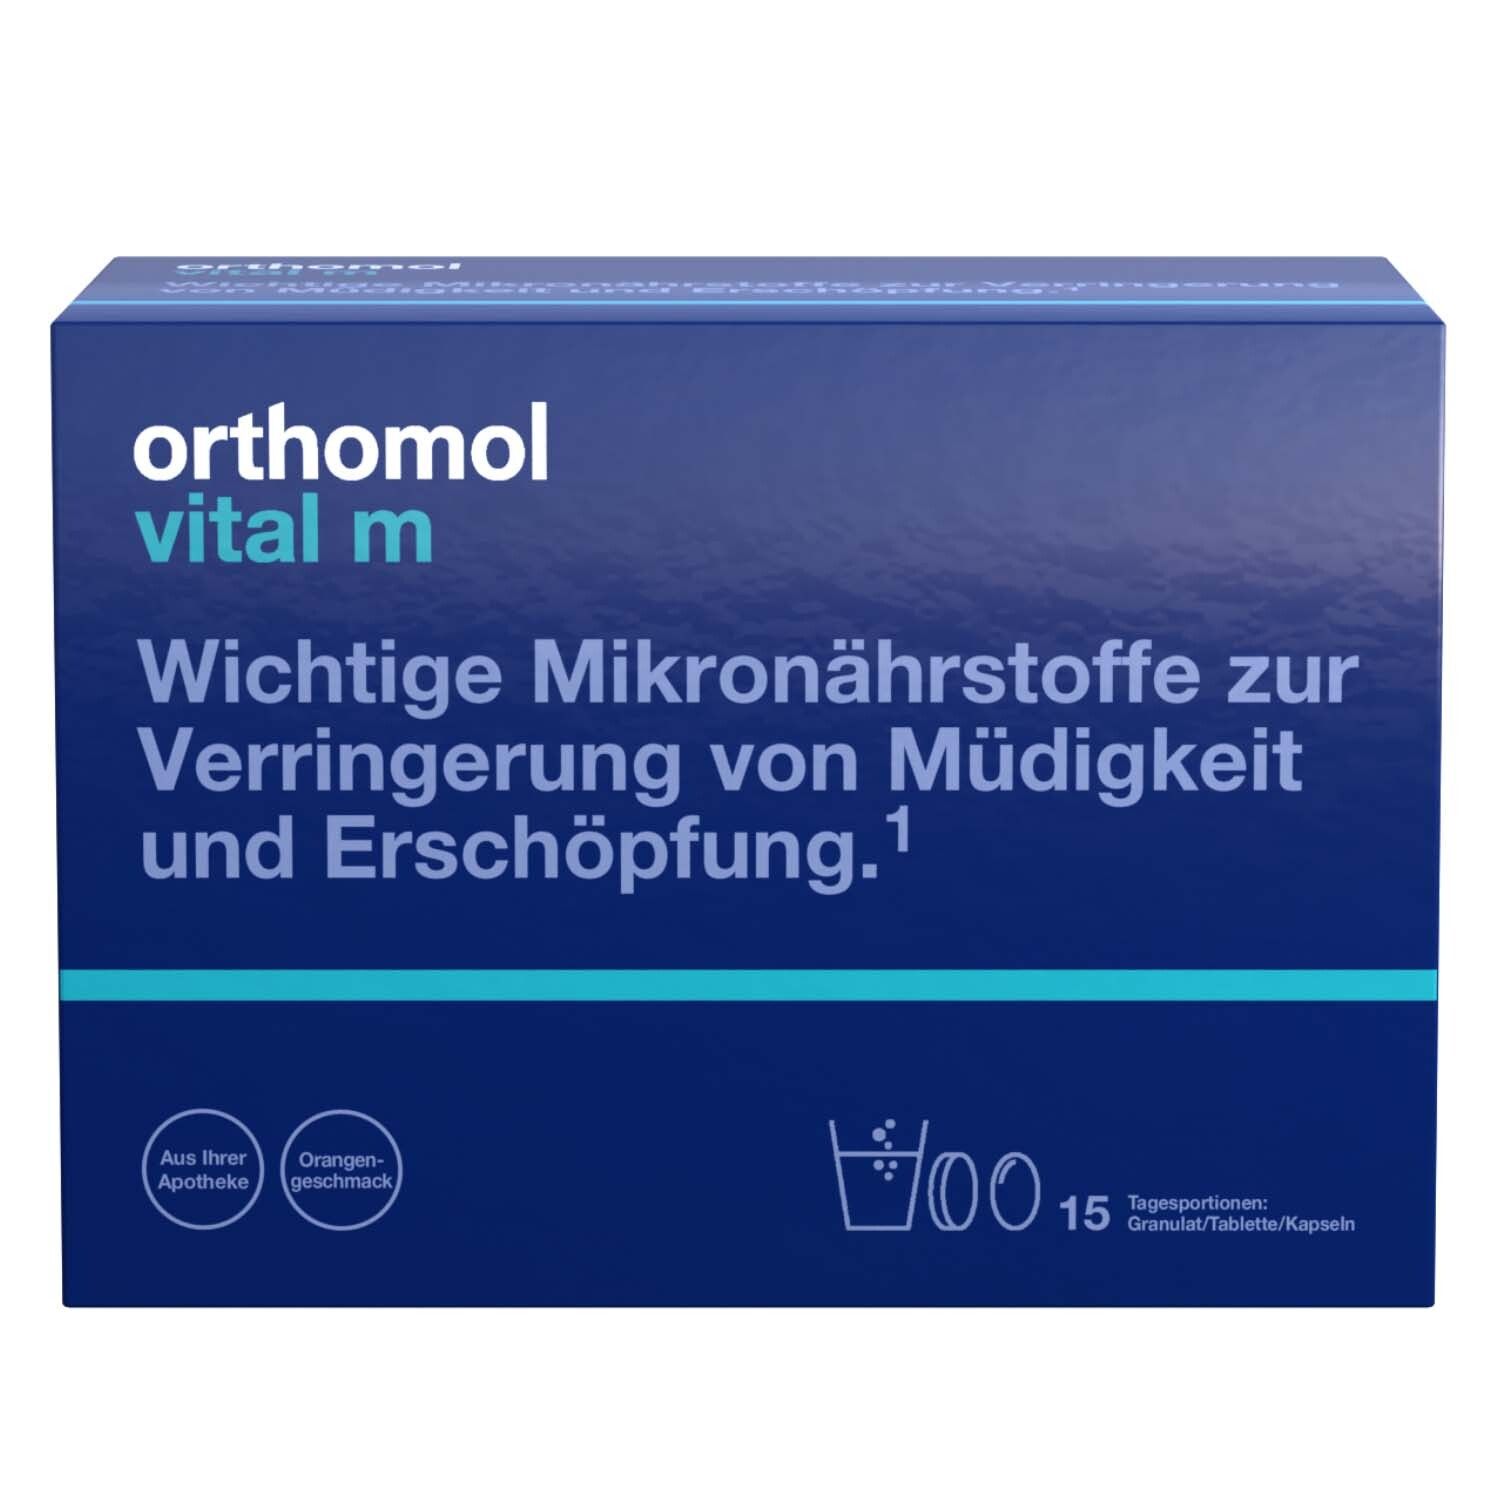 Orthomol Vital m Granulat/Tablette/Kapseln Orange